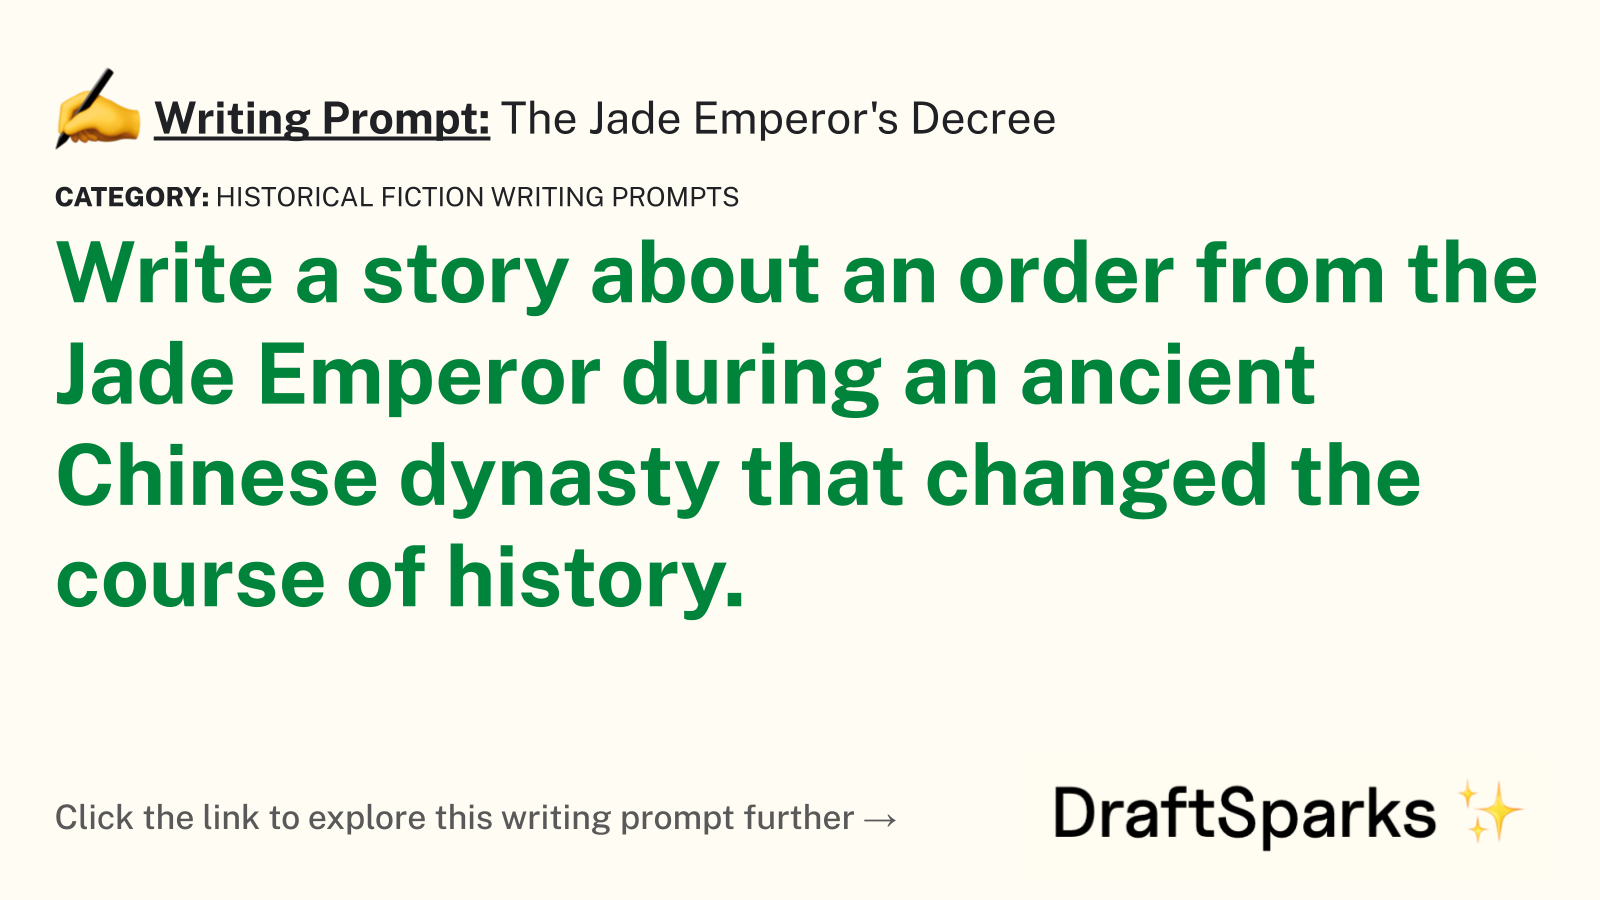 The Jade Emperor’s Decree